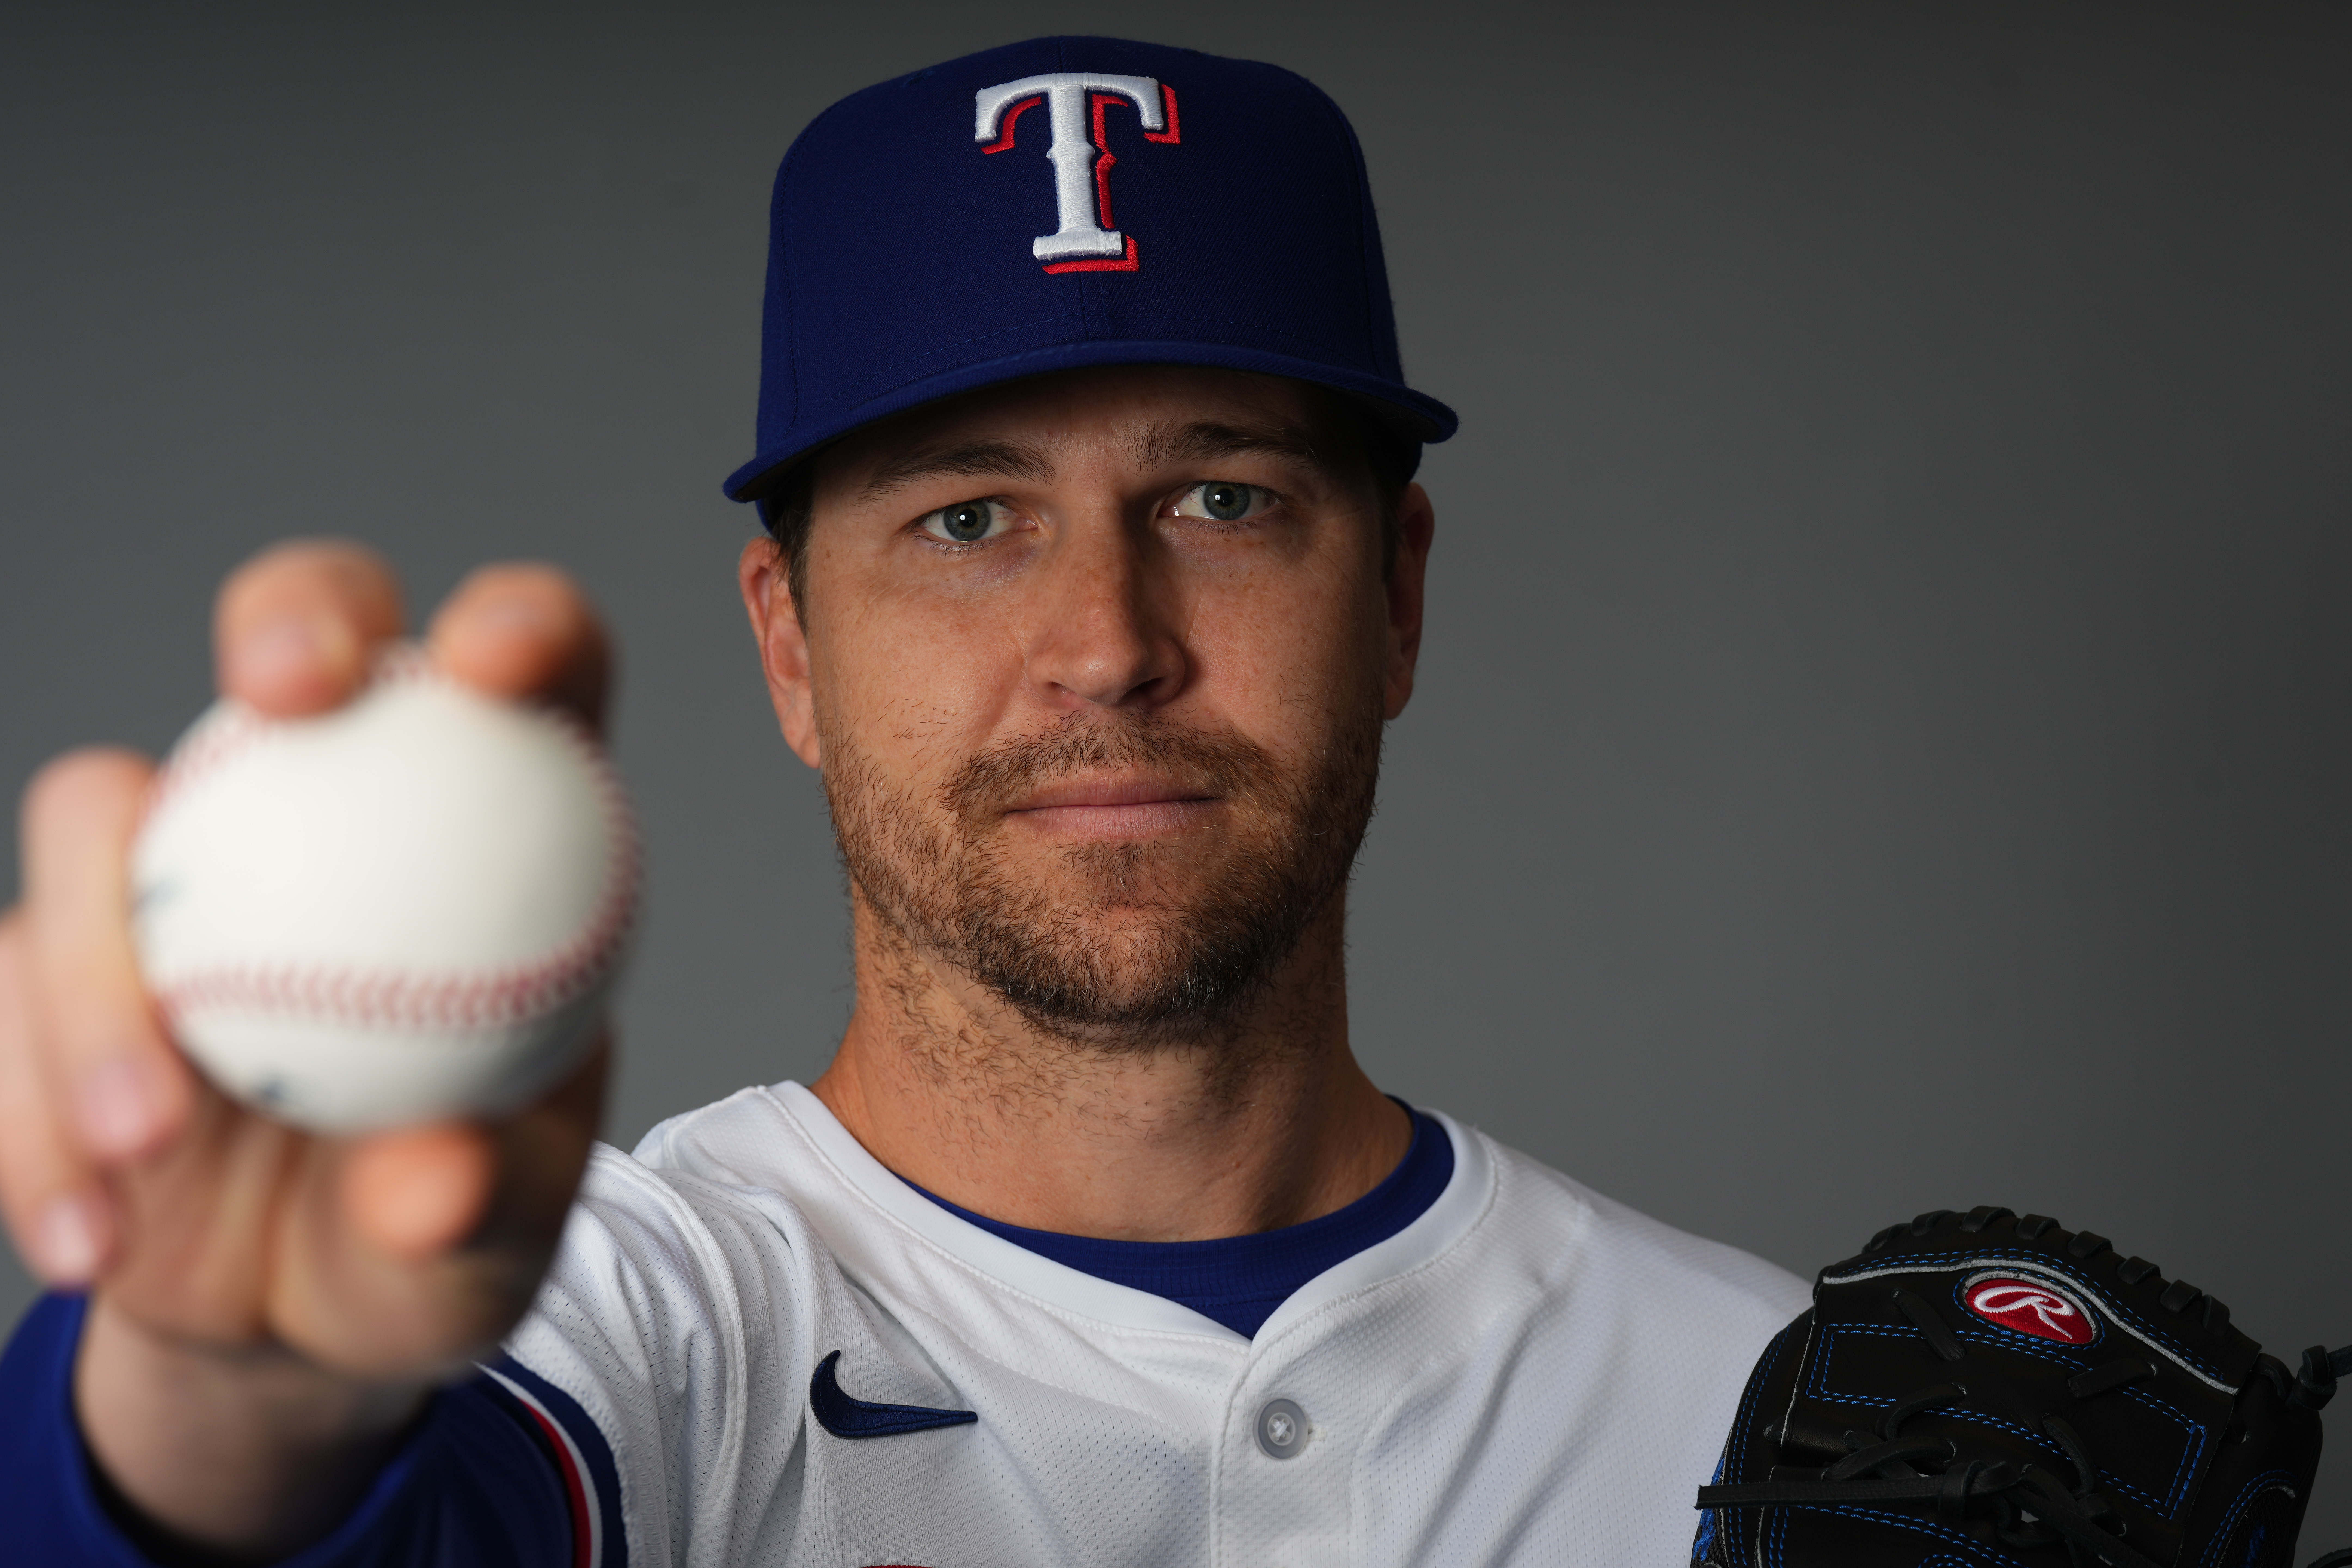 Texas Rangers - Jacob deGrom (Image via USA Today)